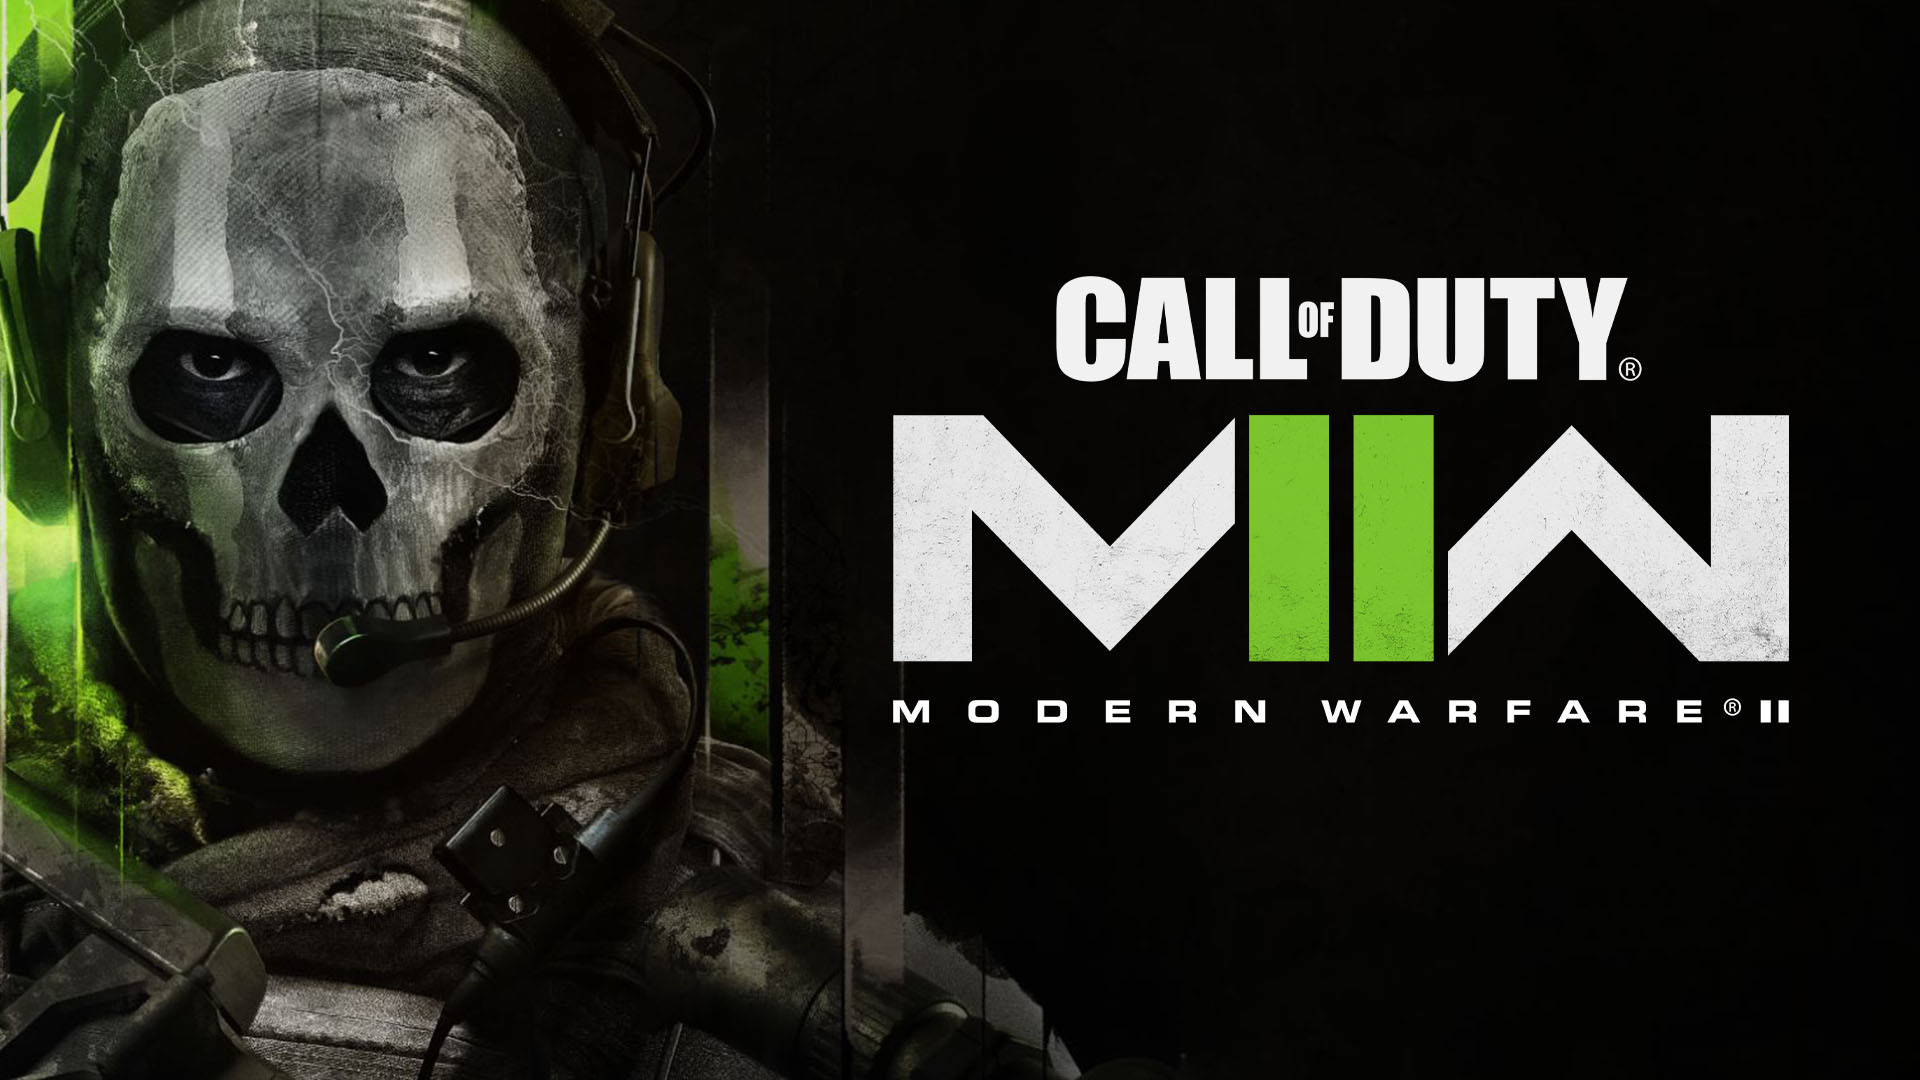 Parliamo del nuovo Call of Duty Modern Warfare II